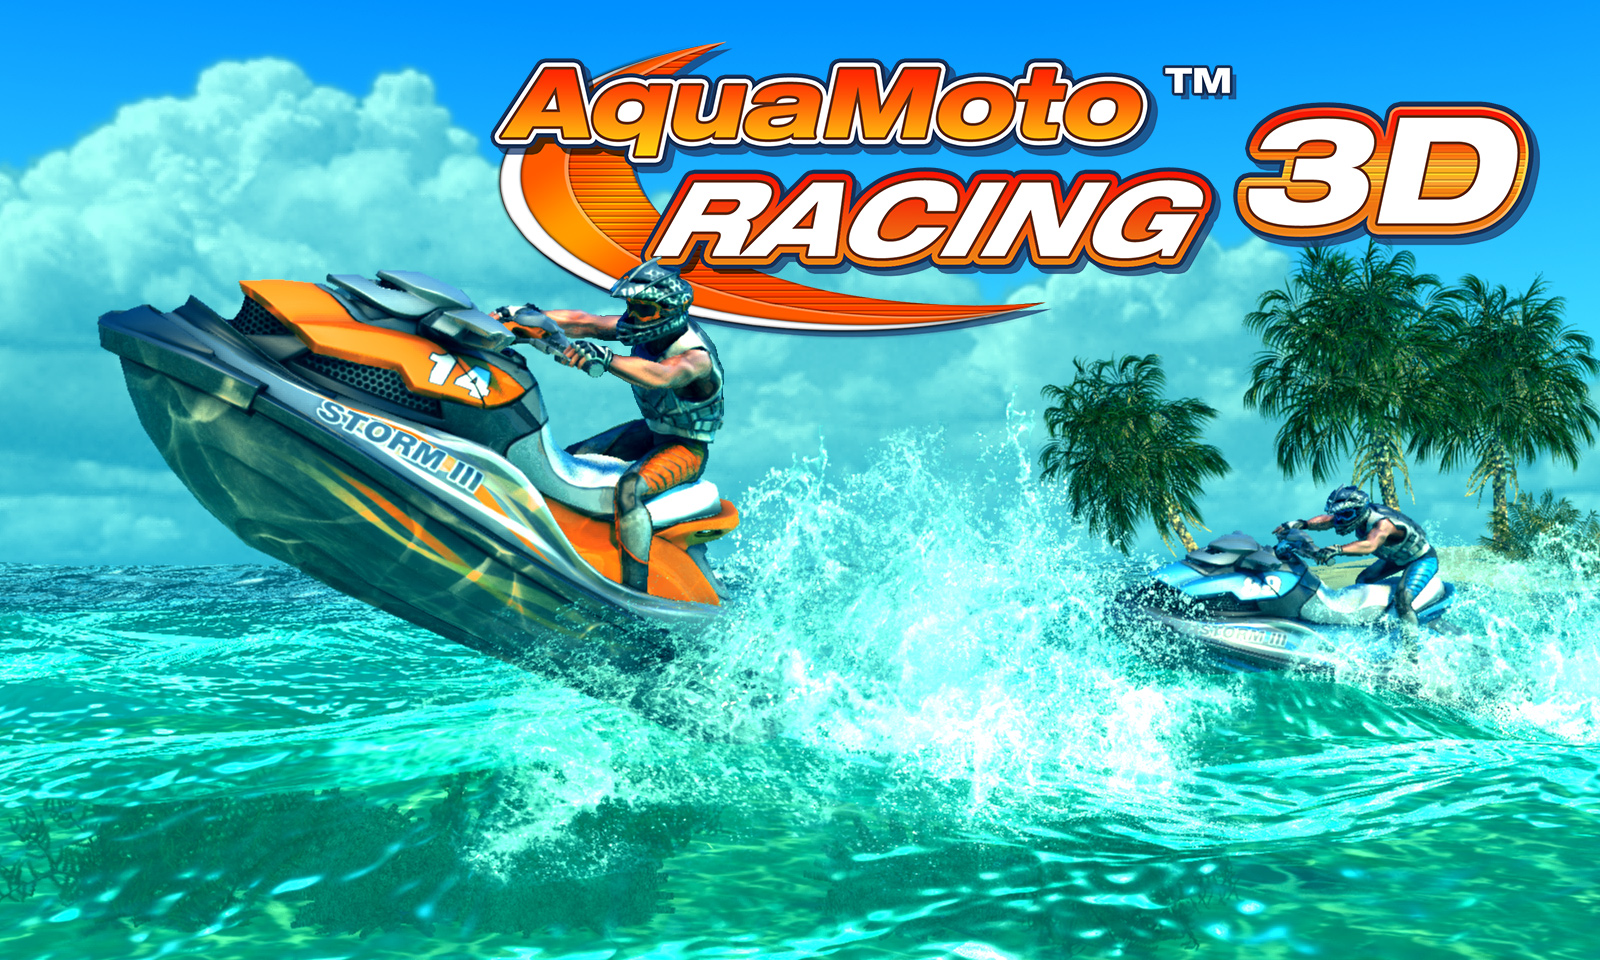 Image of Aqua Moto Racing 3D